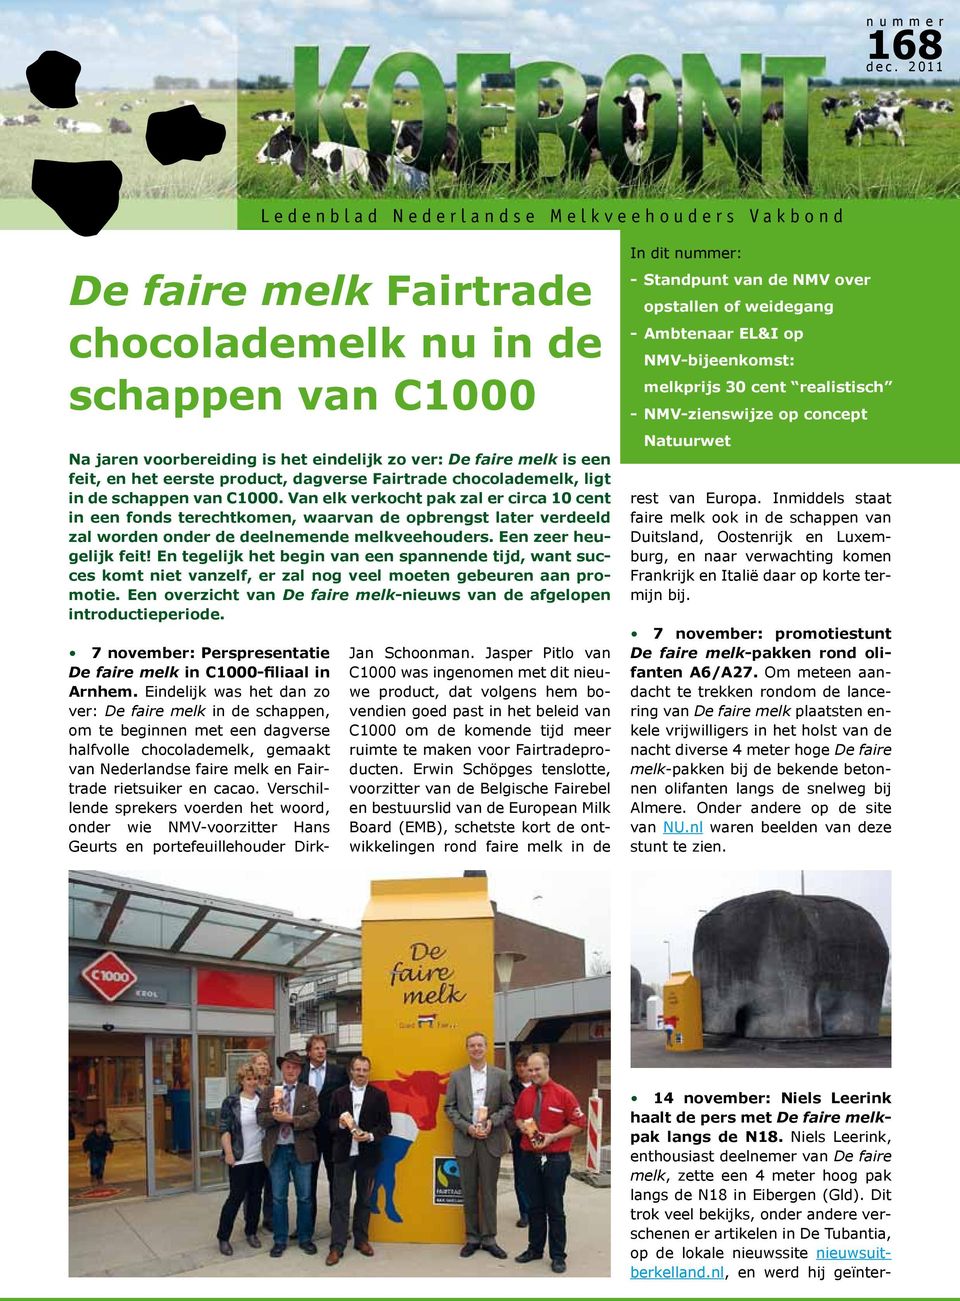 ver: De faire melk is een feit, en het eerste product, dagverse Fairtrade chocolademelk, ligt in de schappen van C1000.